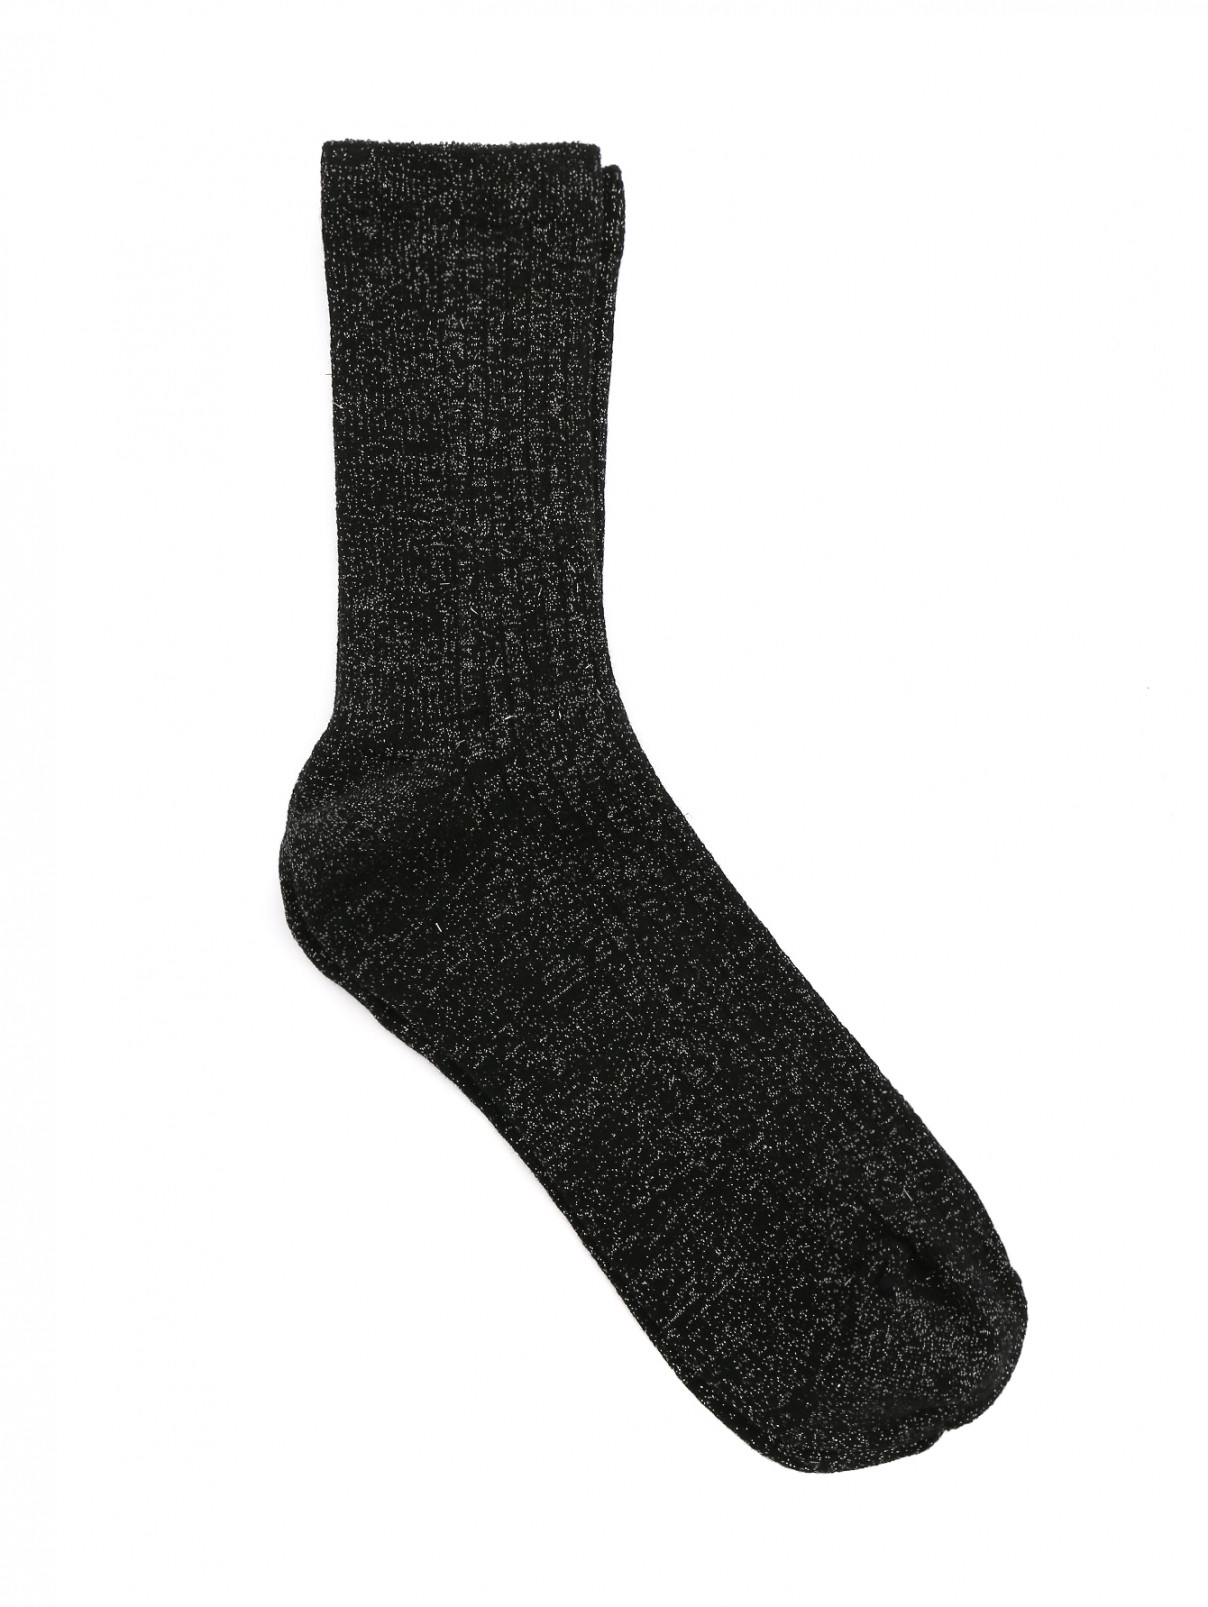 Носки из хлопка ALTO MILANO  –  Общий вид  – Цвет:  Черный